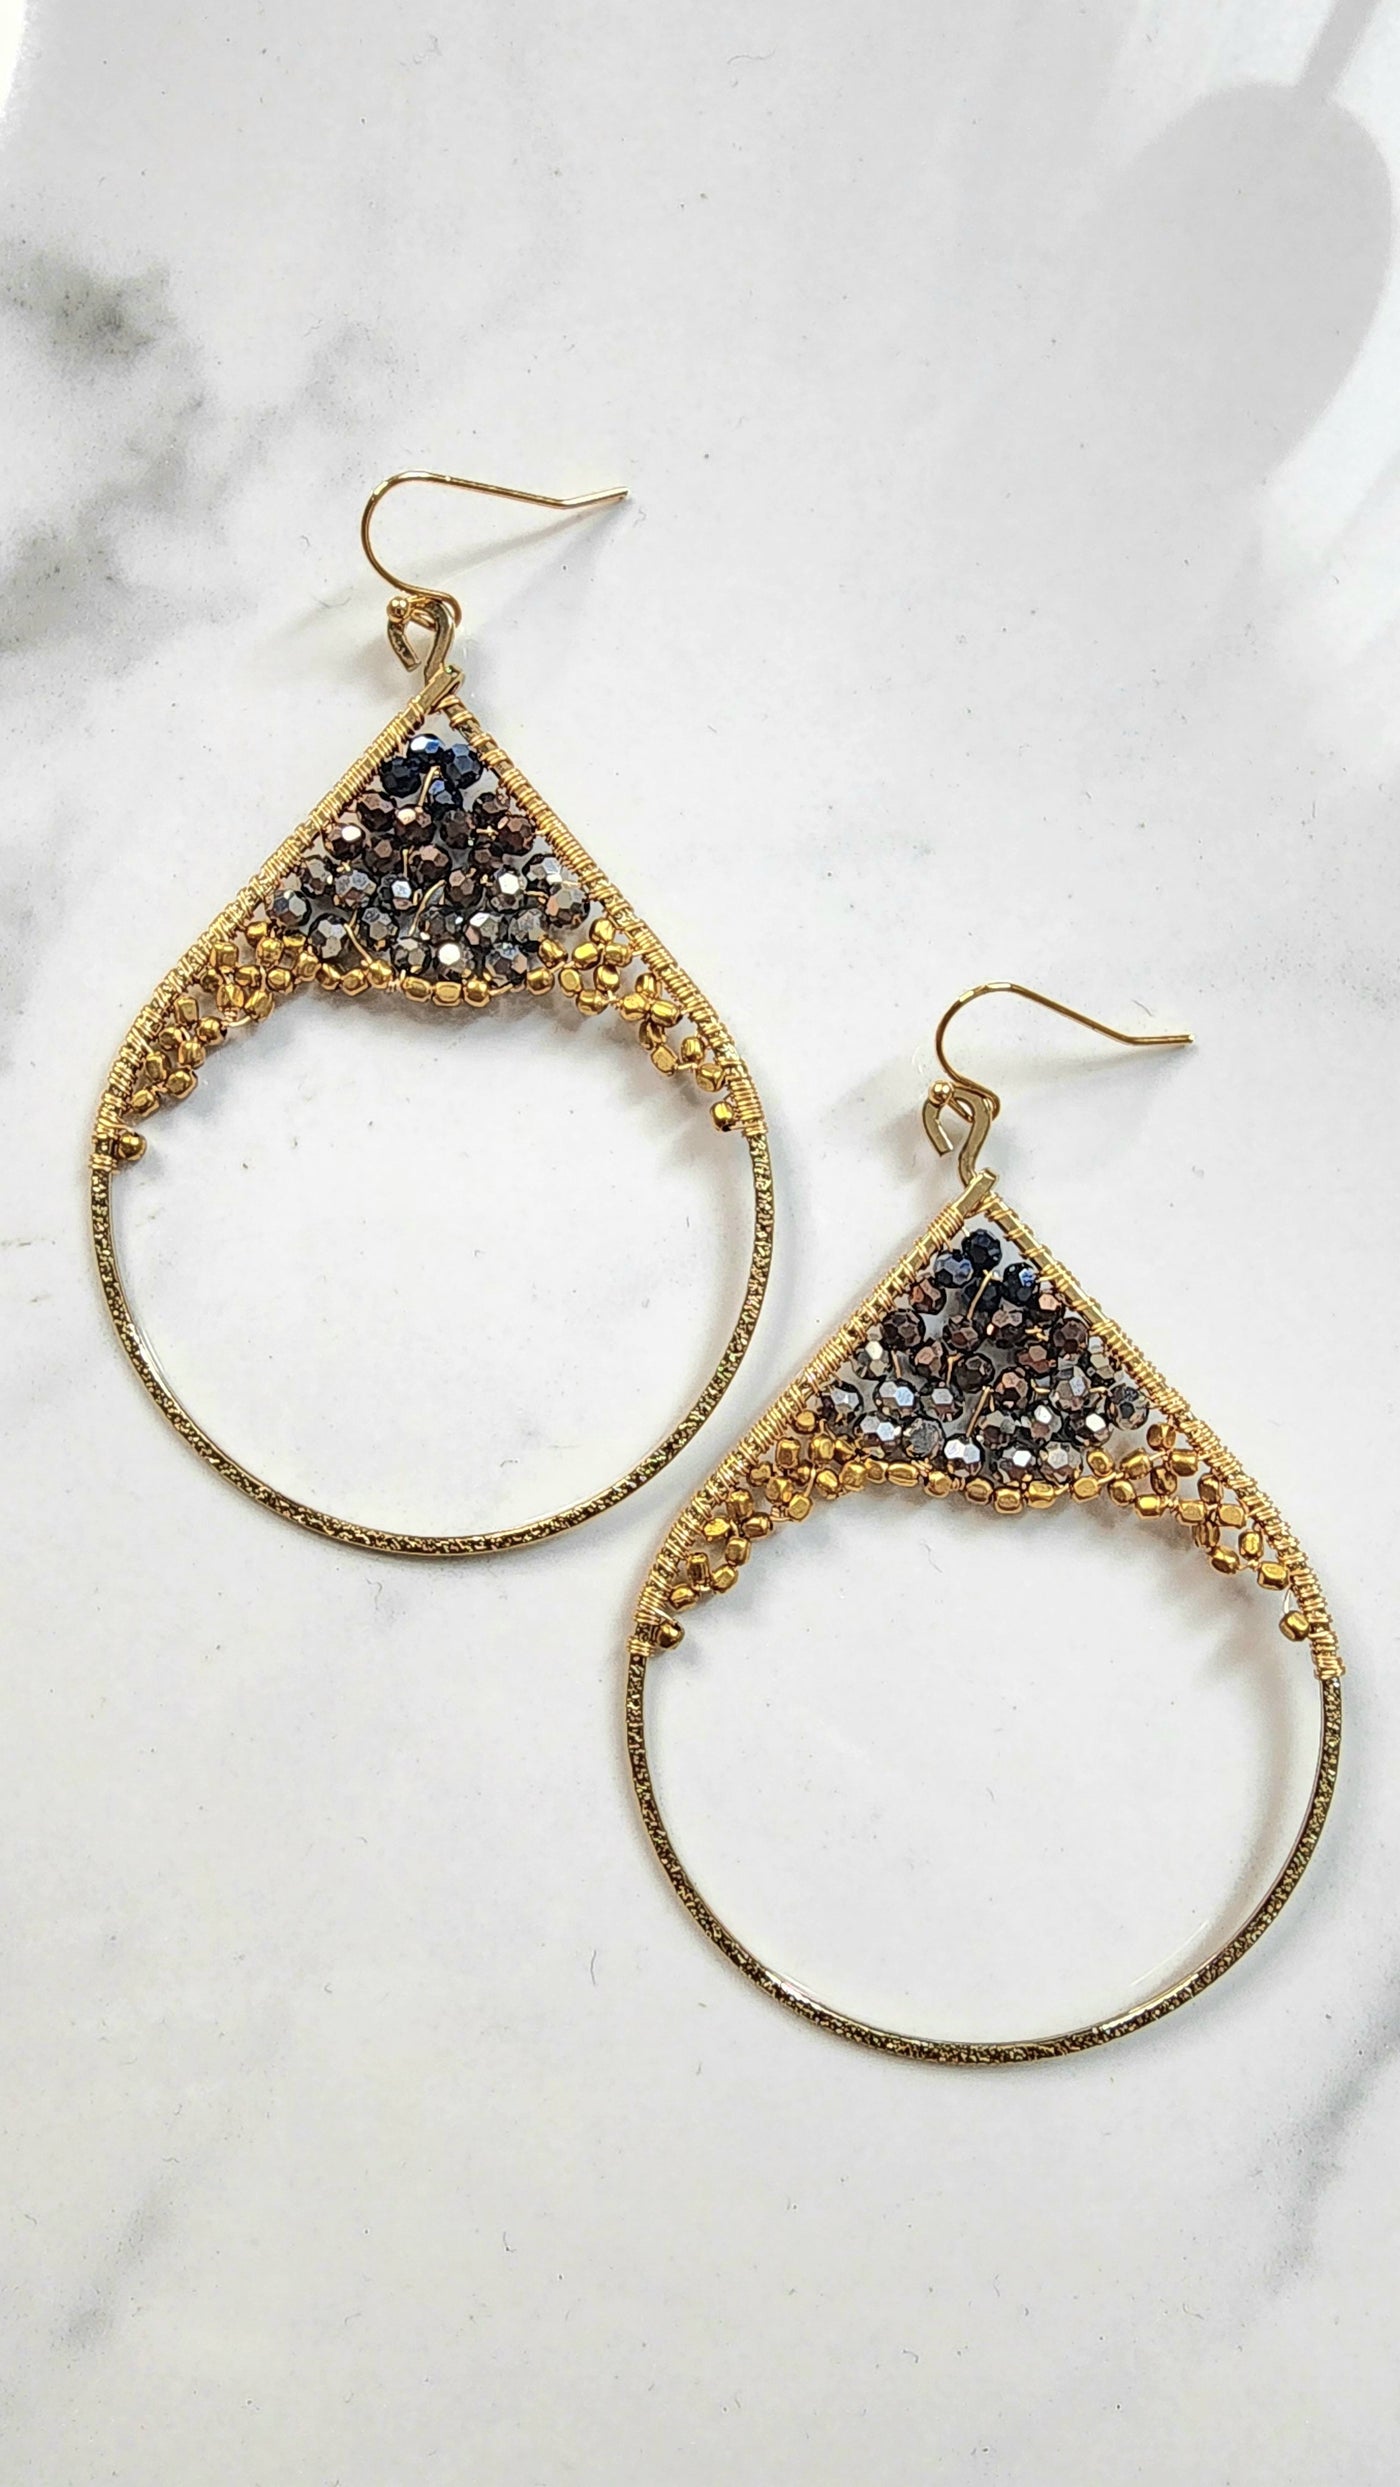 Channing earrings in dark/gold